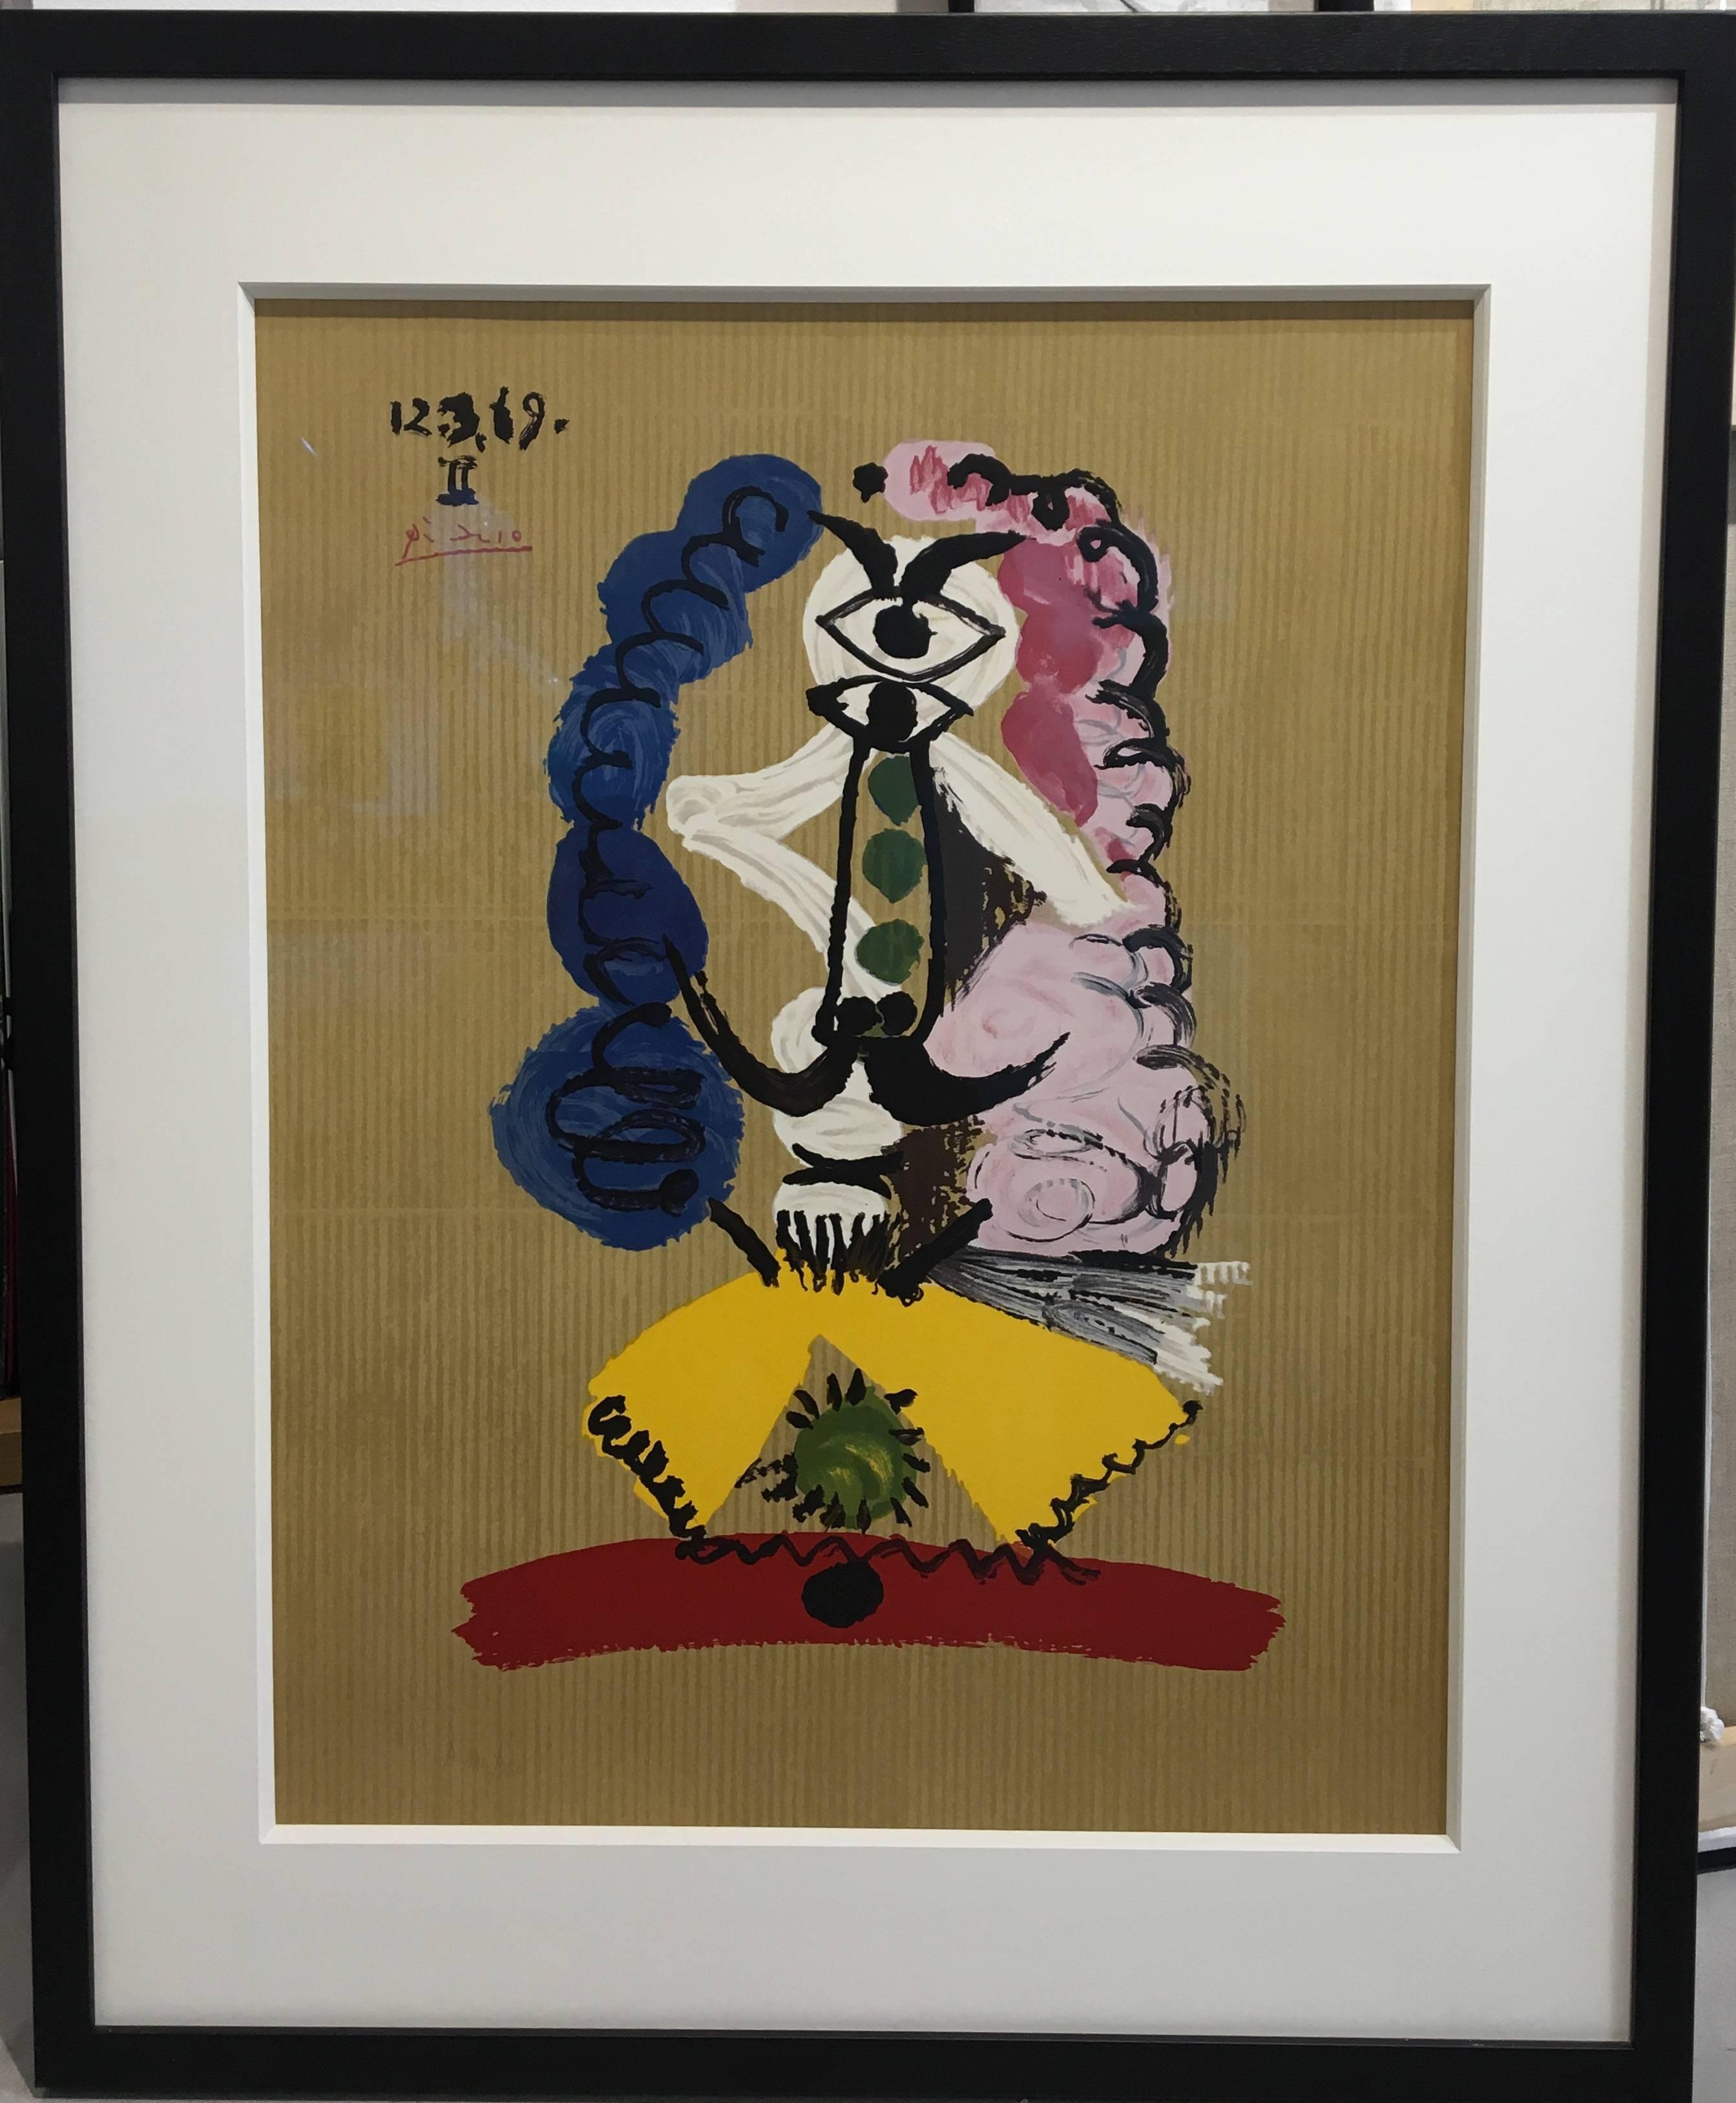 Pablo Picasso Figurative Print - 12.3.69 - II